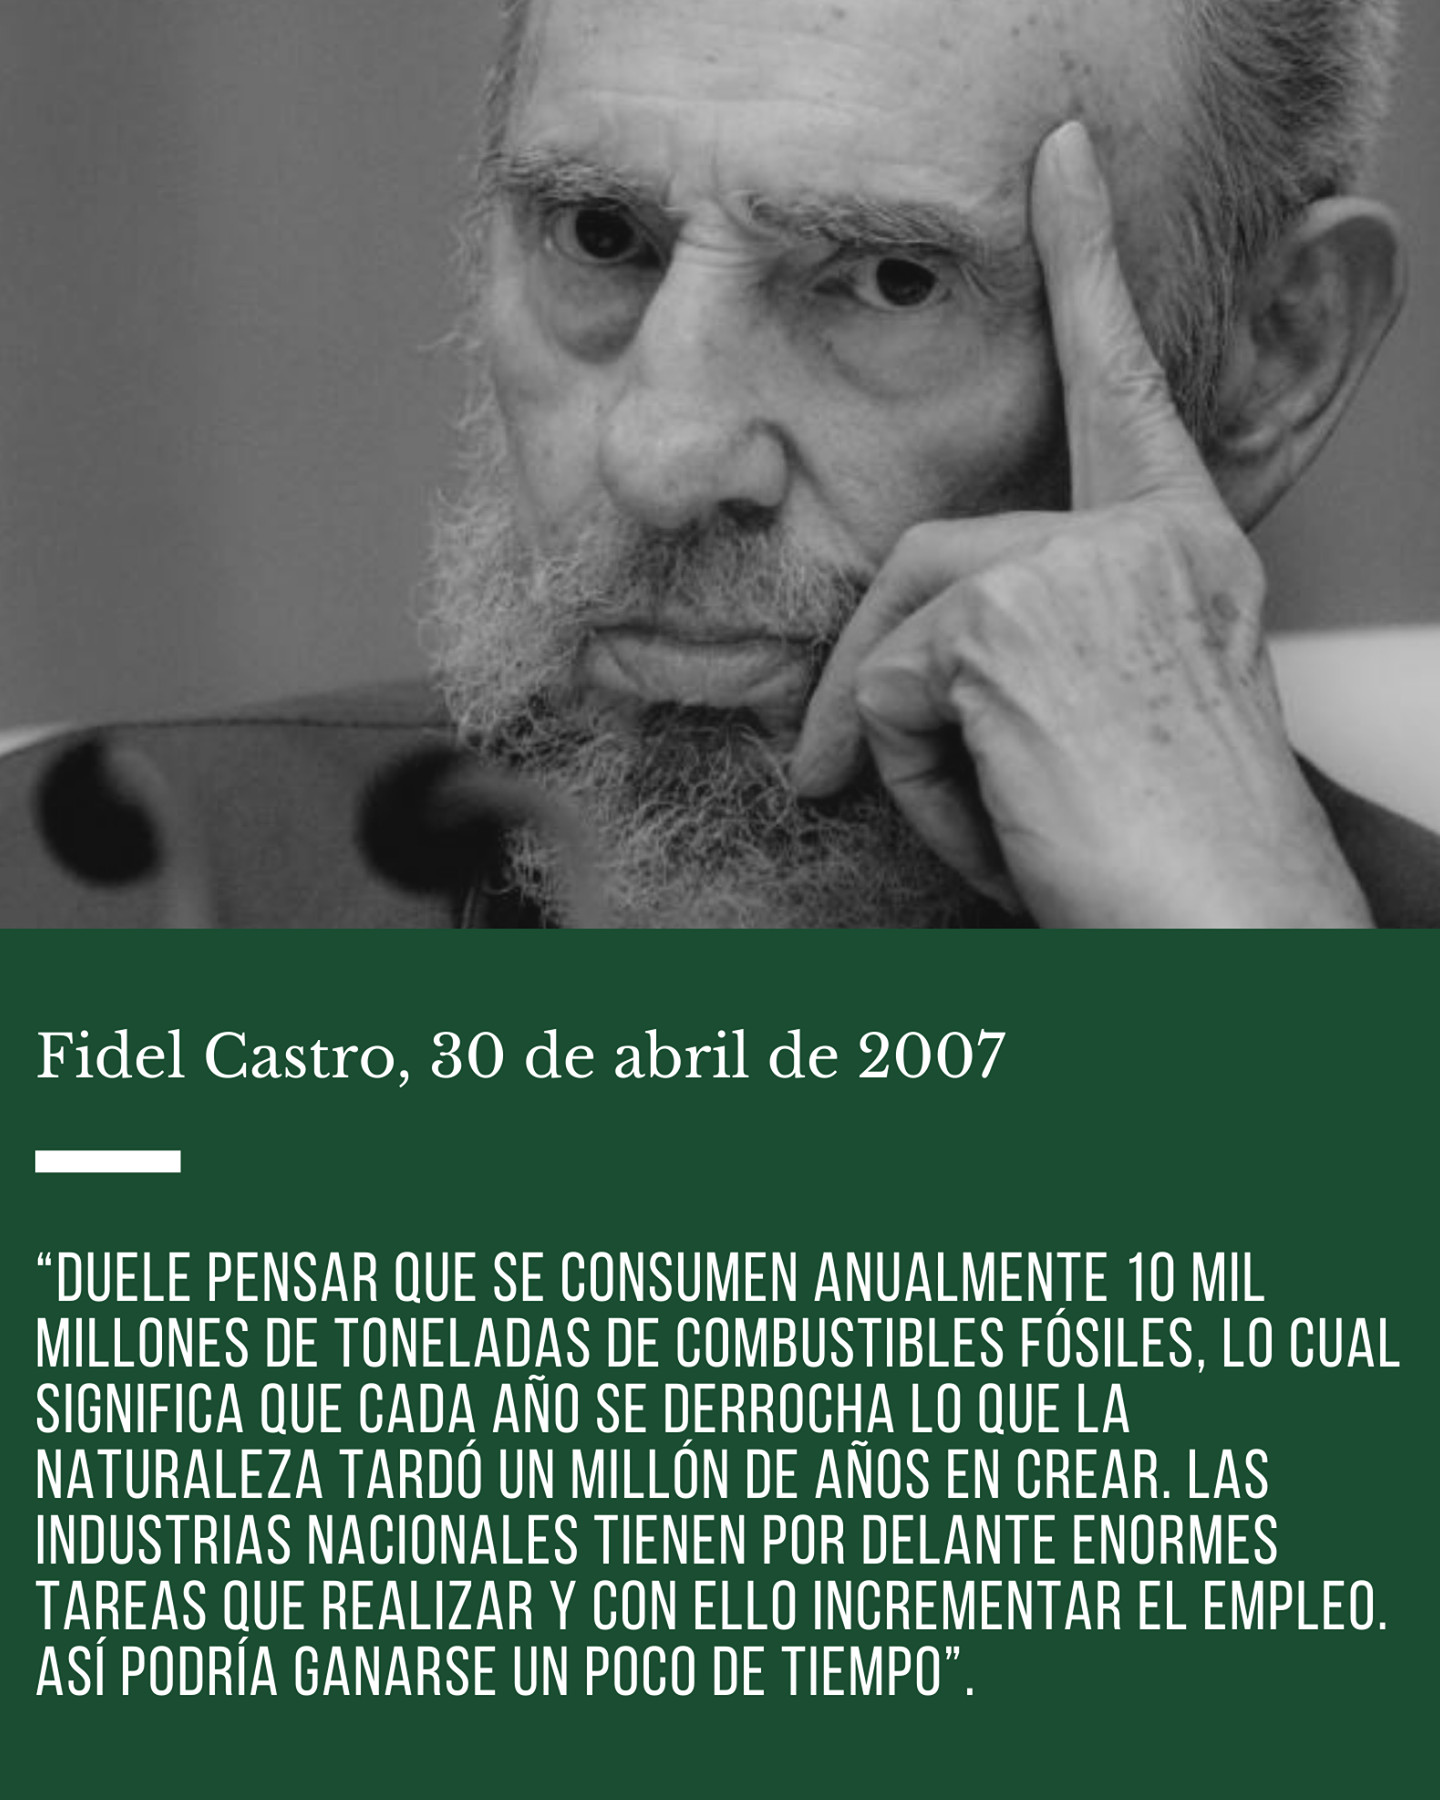 Fidel Castro: Energierevolution